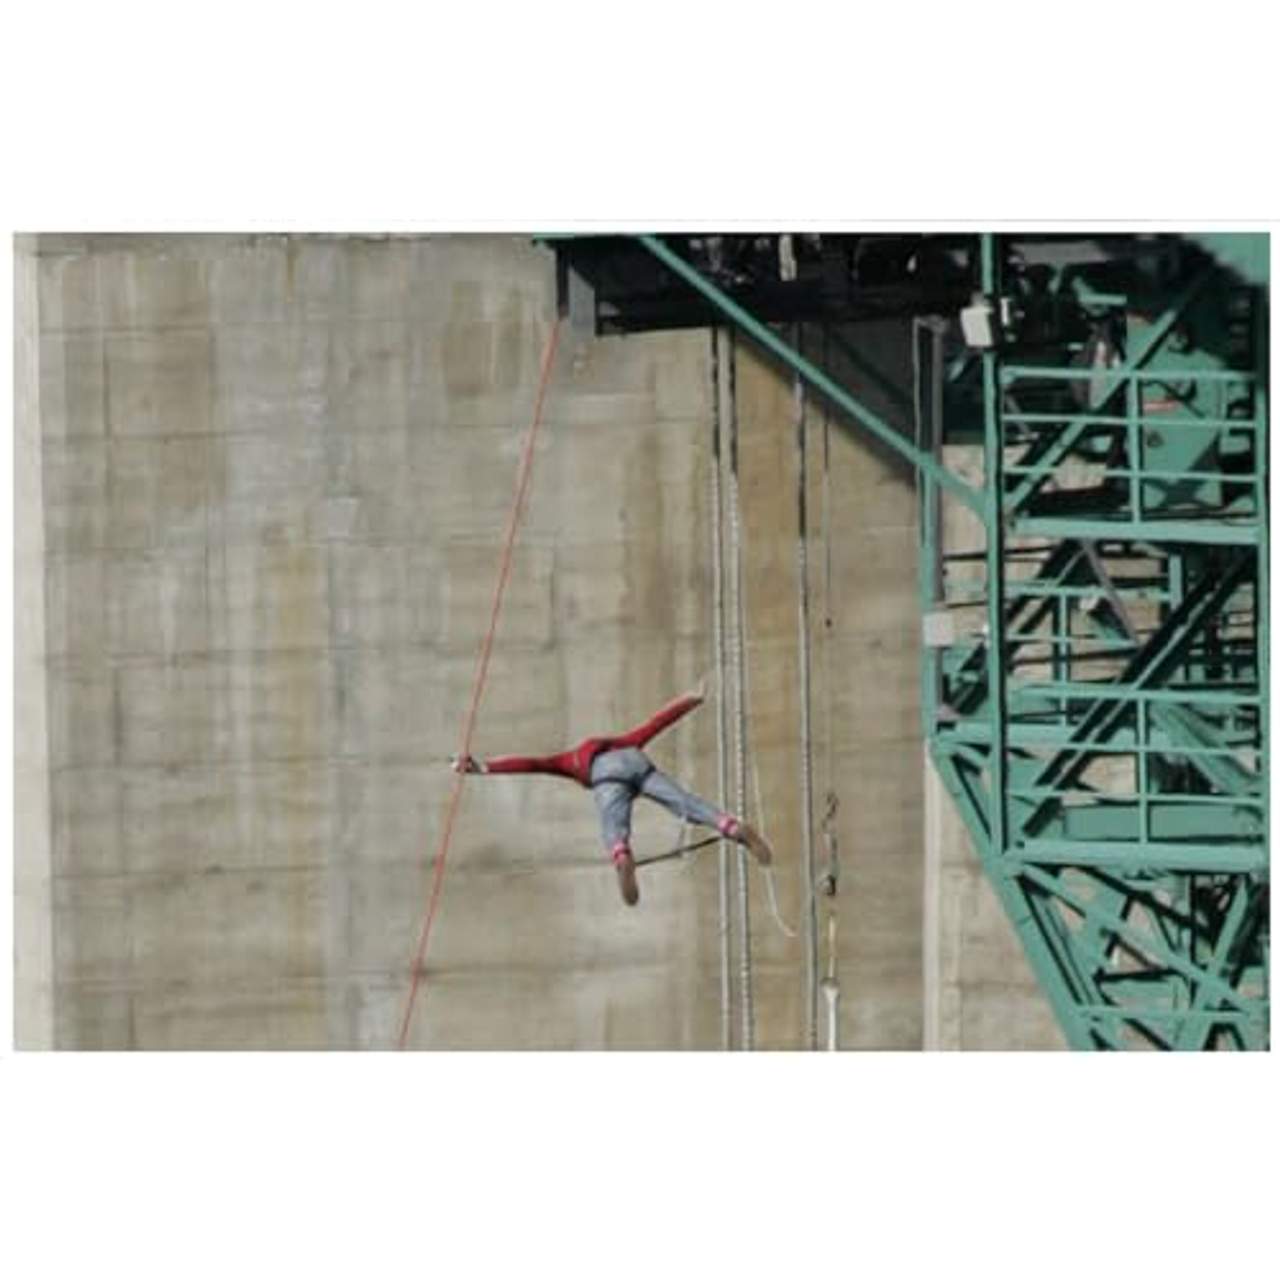 Jochen Schweizer Geschenkgutschein: 192 Meter Bungy-Sprung von der Europabrücke